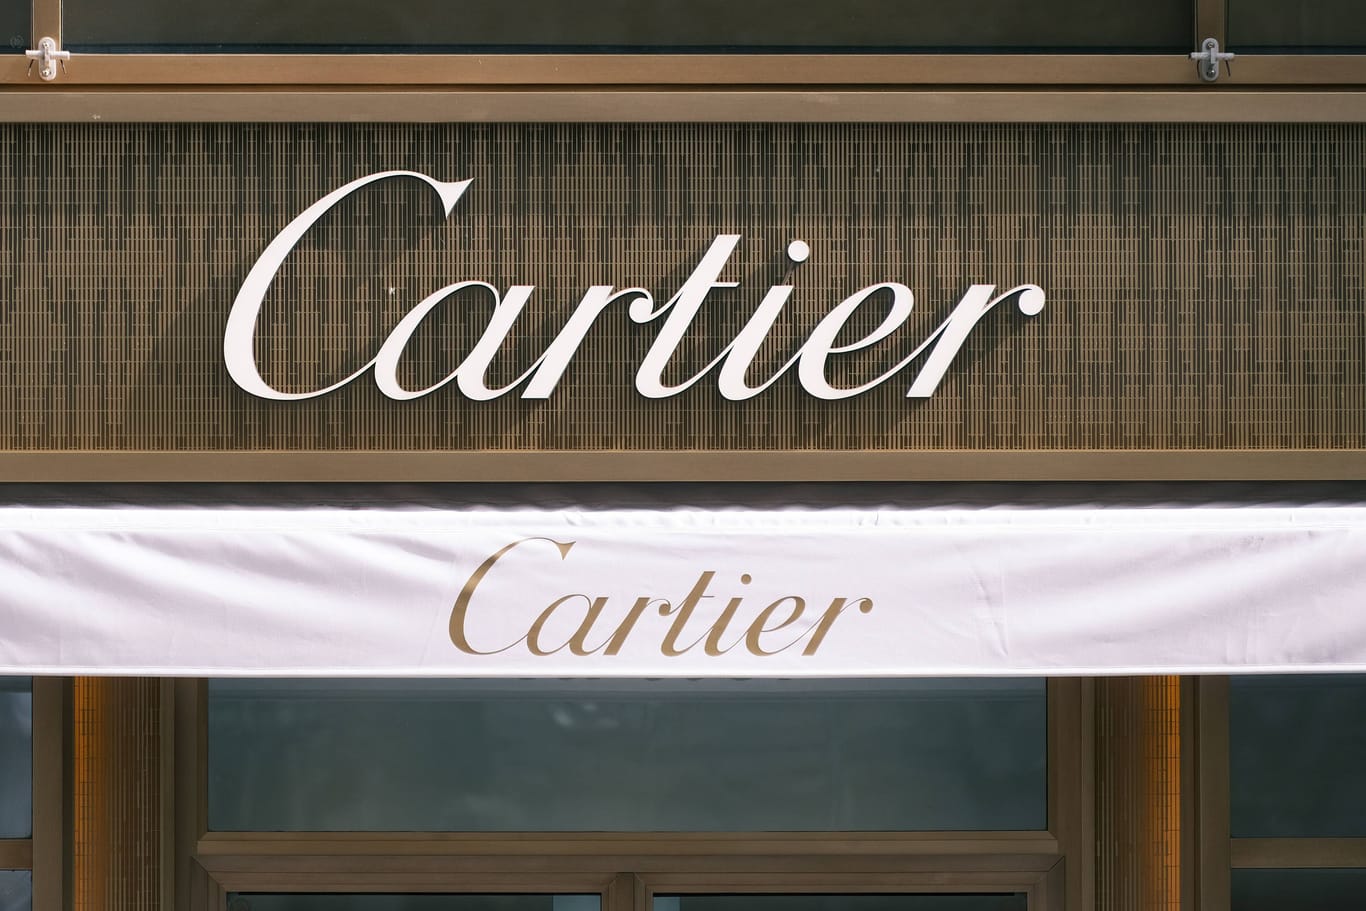 Schmuckunternehmen Cartier (Archivbild): Die Luxusmarke preiste Ohrringe falsch aus - und muss liefern.